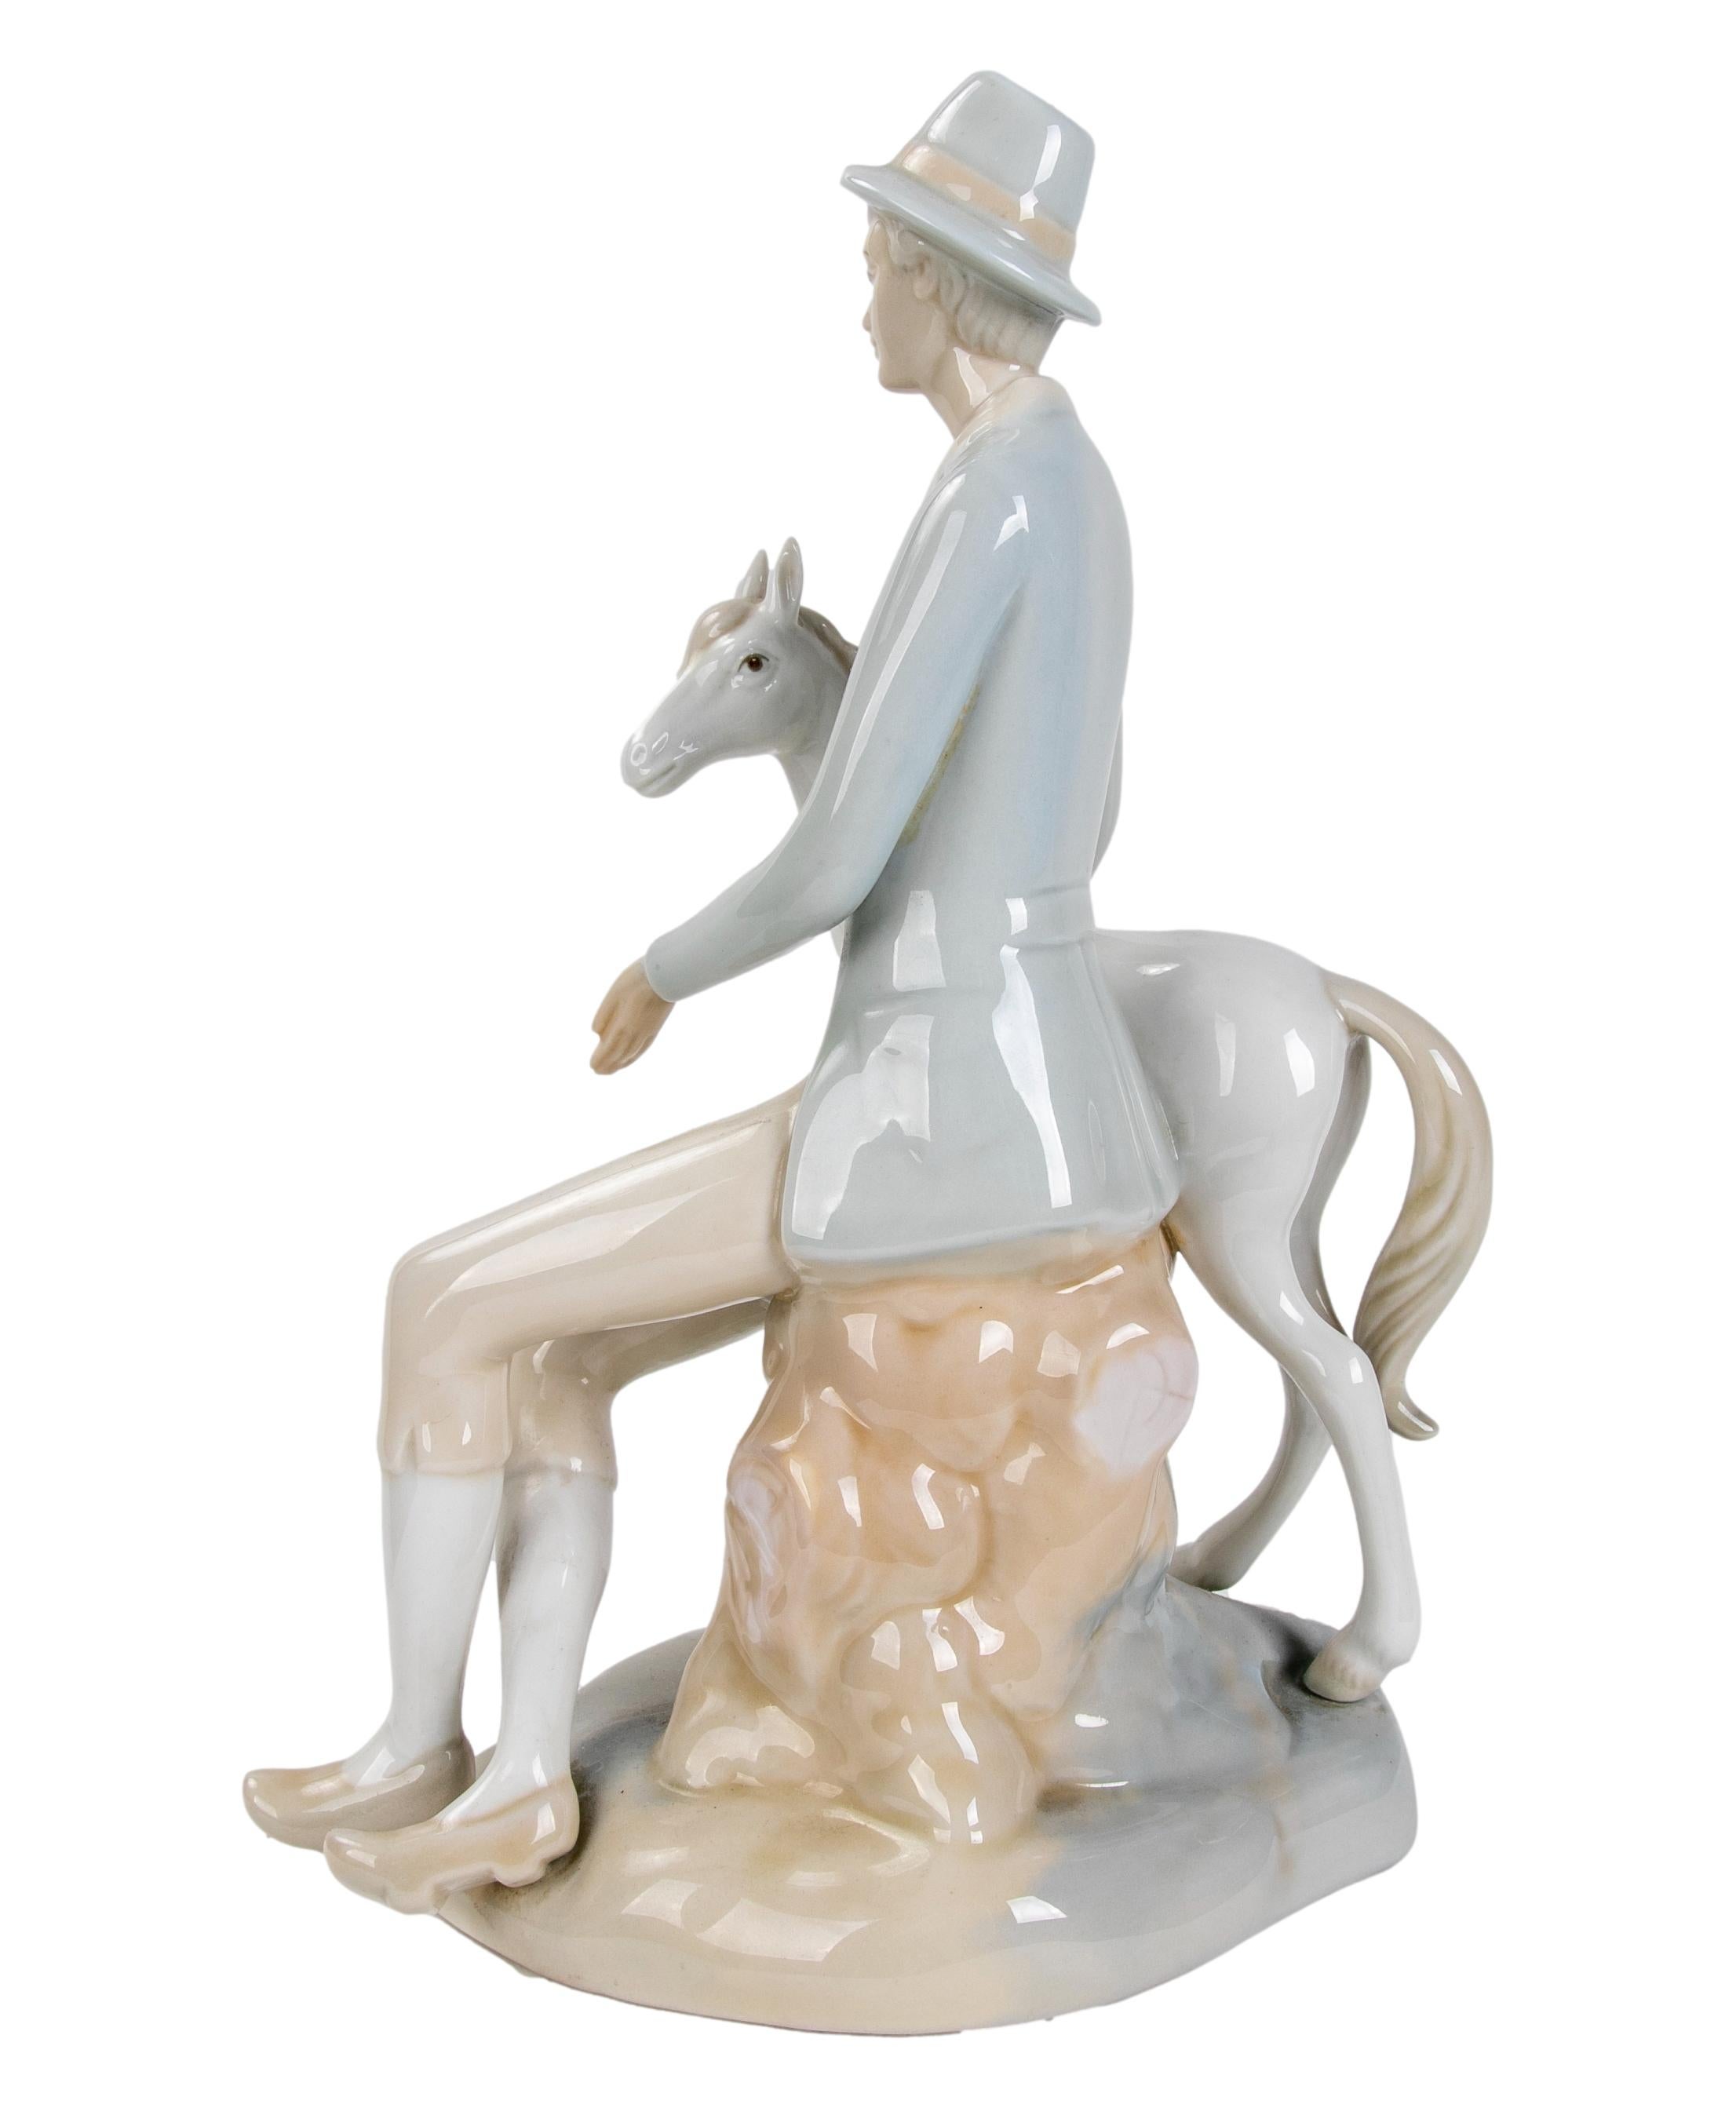 figurine en porcelaine des années 1980 par LLadro 
Il a une petite cassure dans le chapeau.